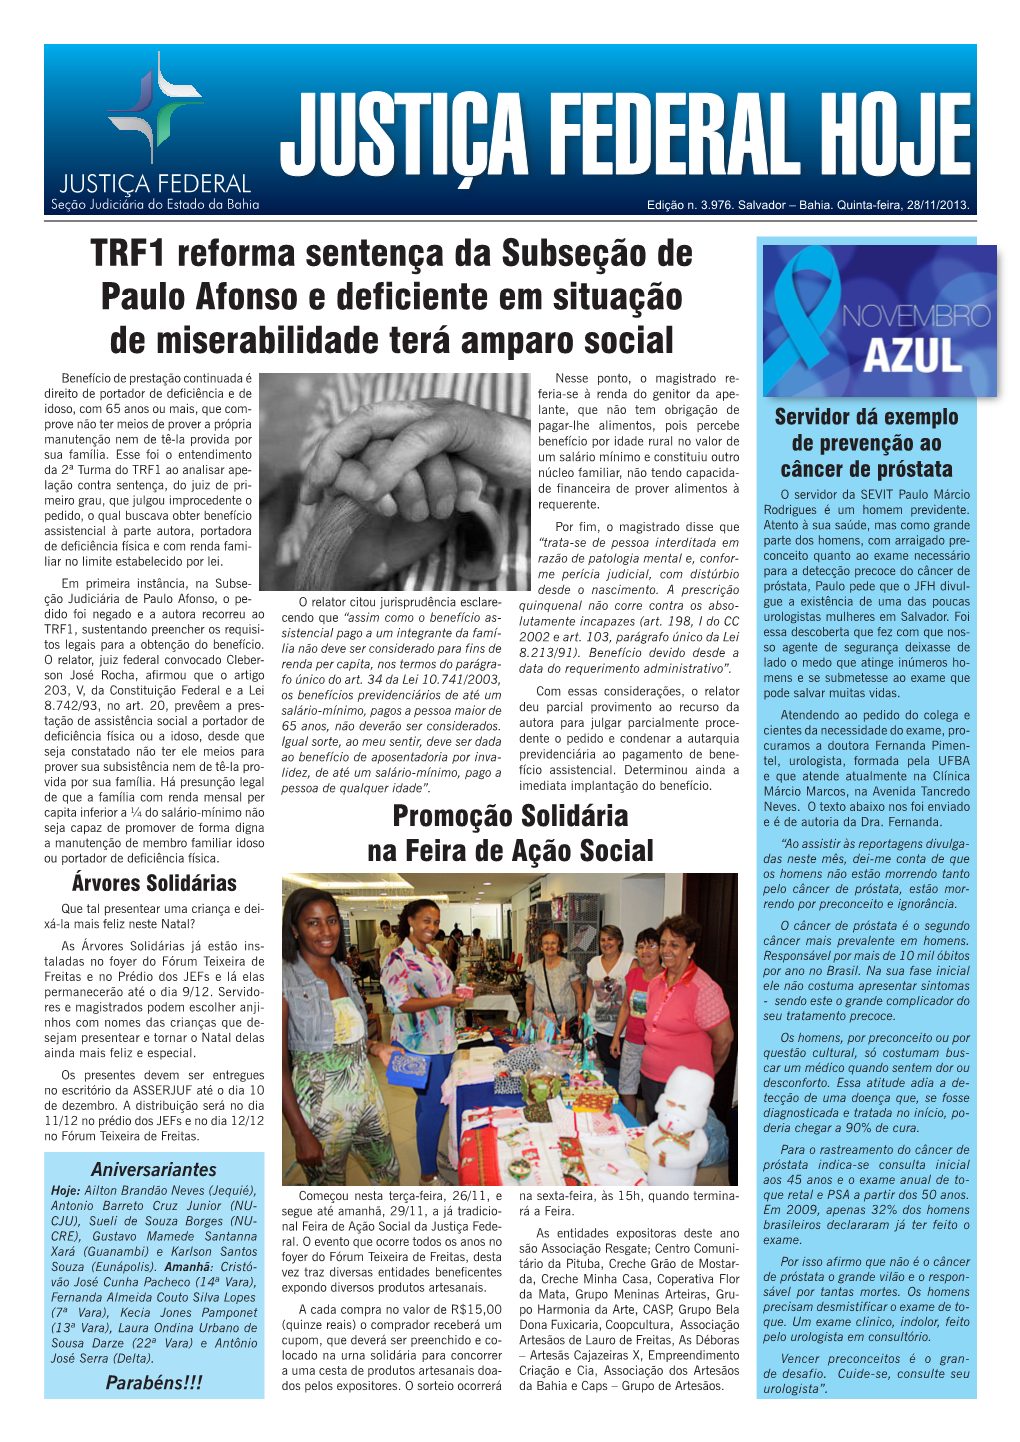 TRF1 Reforma Sentença Da Subseção De Paulo Afonso E Deficiente Em